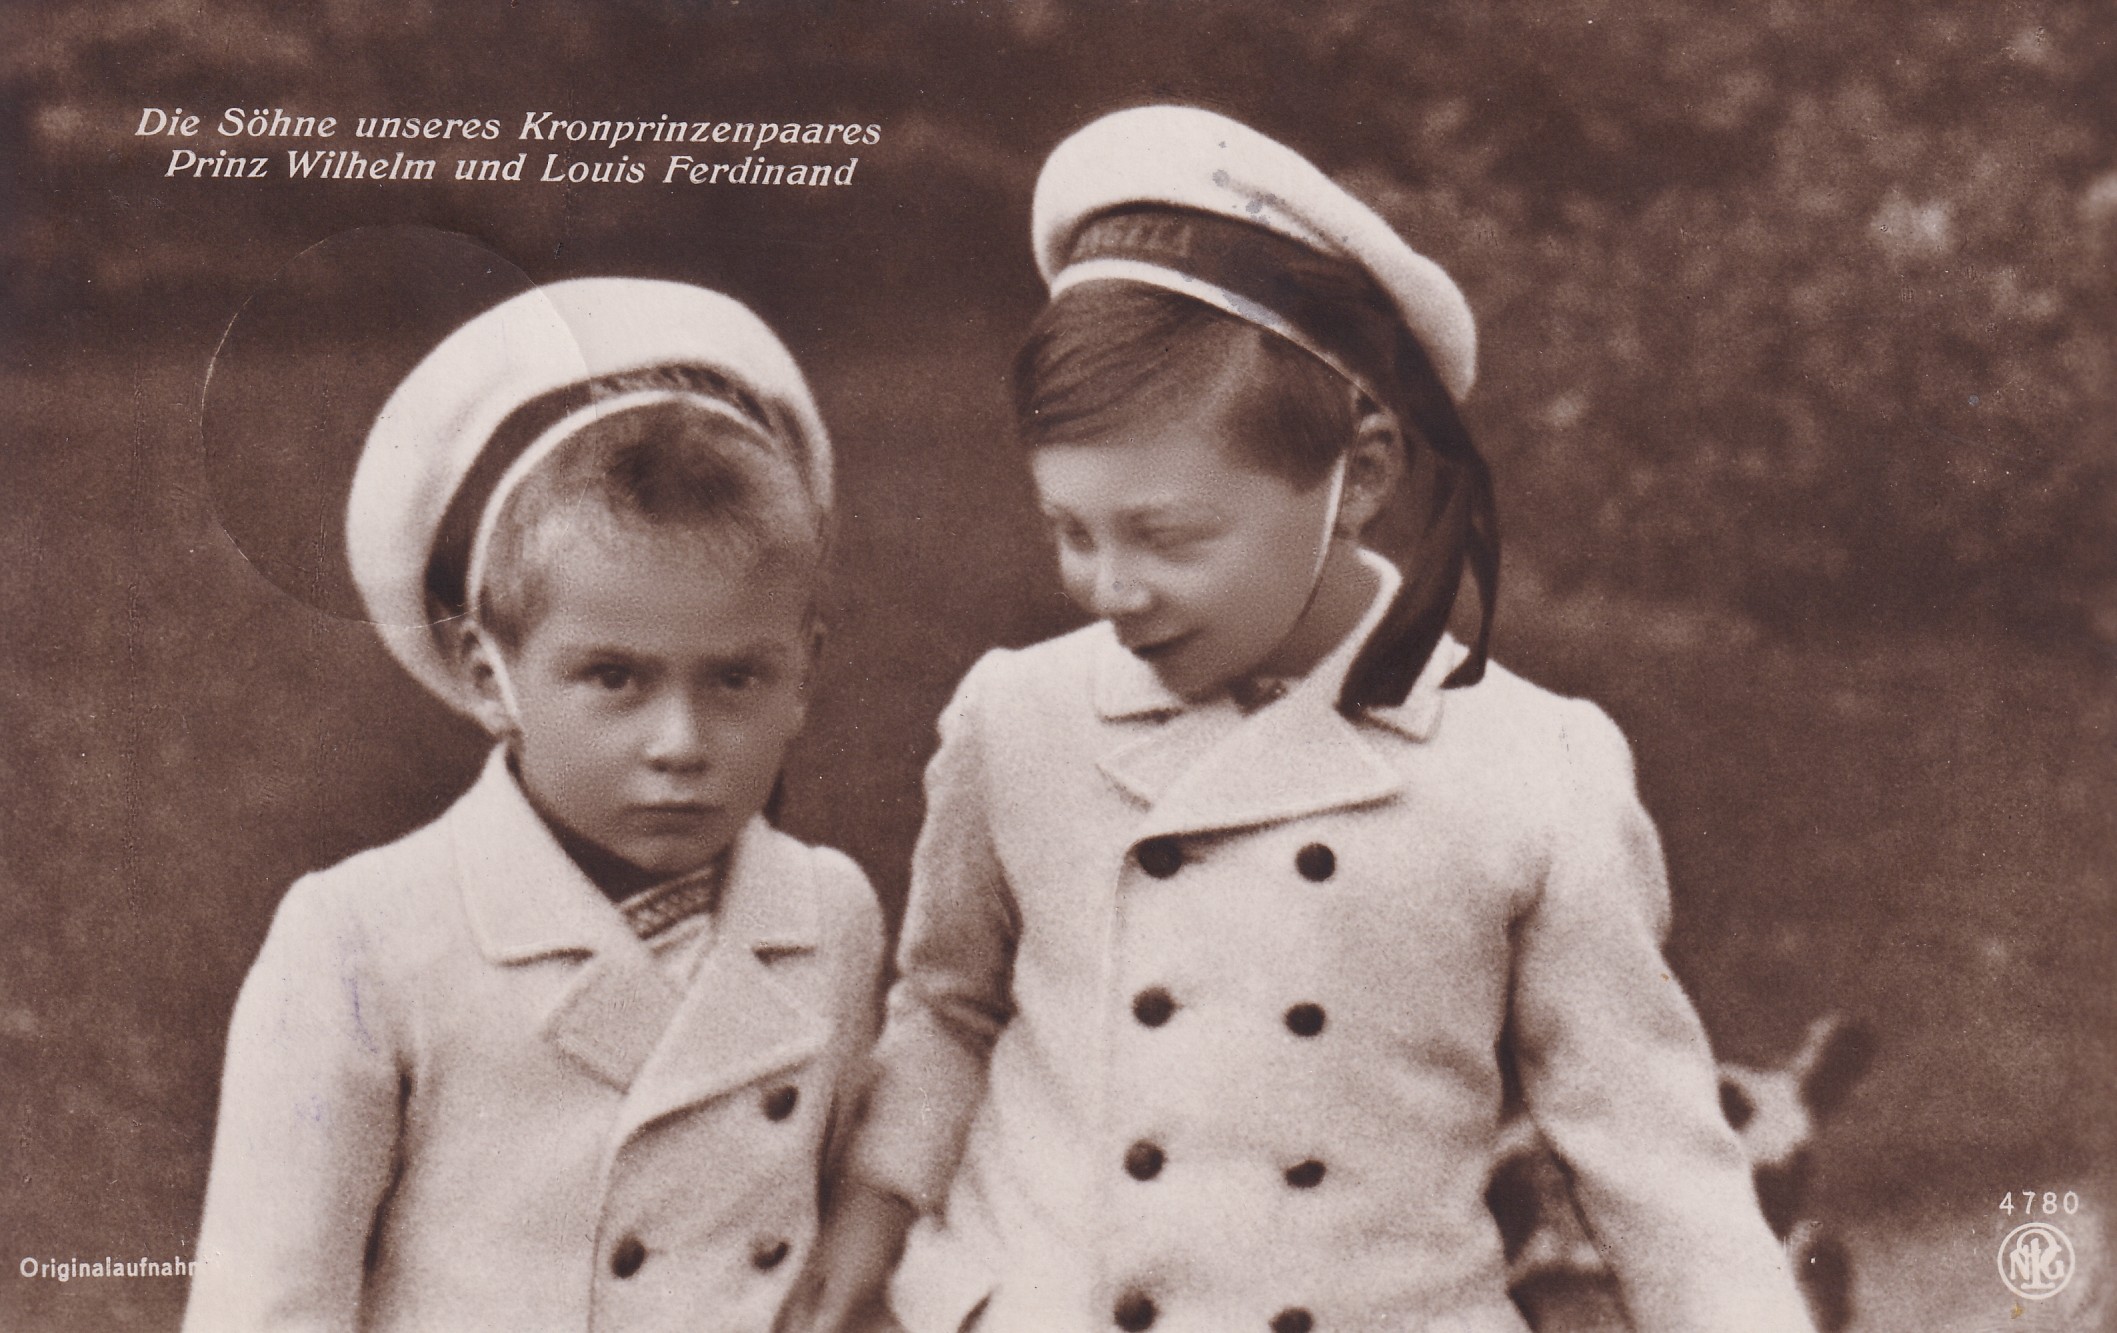 Bildpostkarte mit den beiden ältesten Söhnen des Kronprinzenpaares, 1910 (Schloß Wernigerode GmbH RR-F)